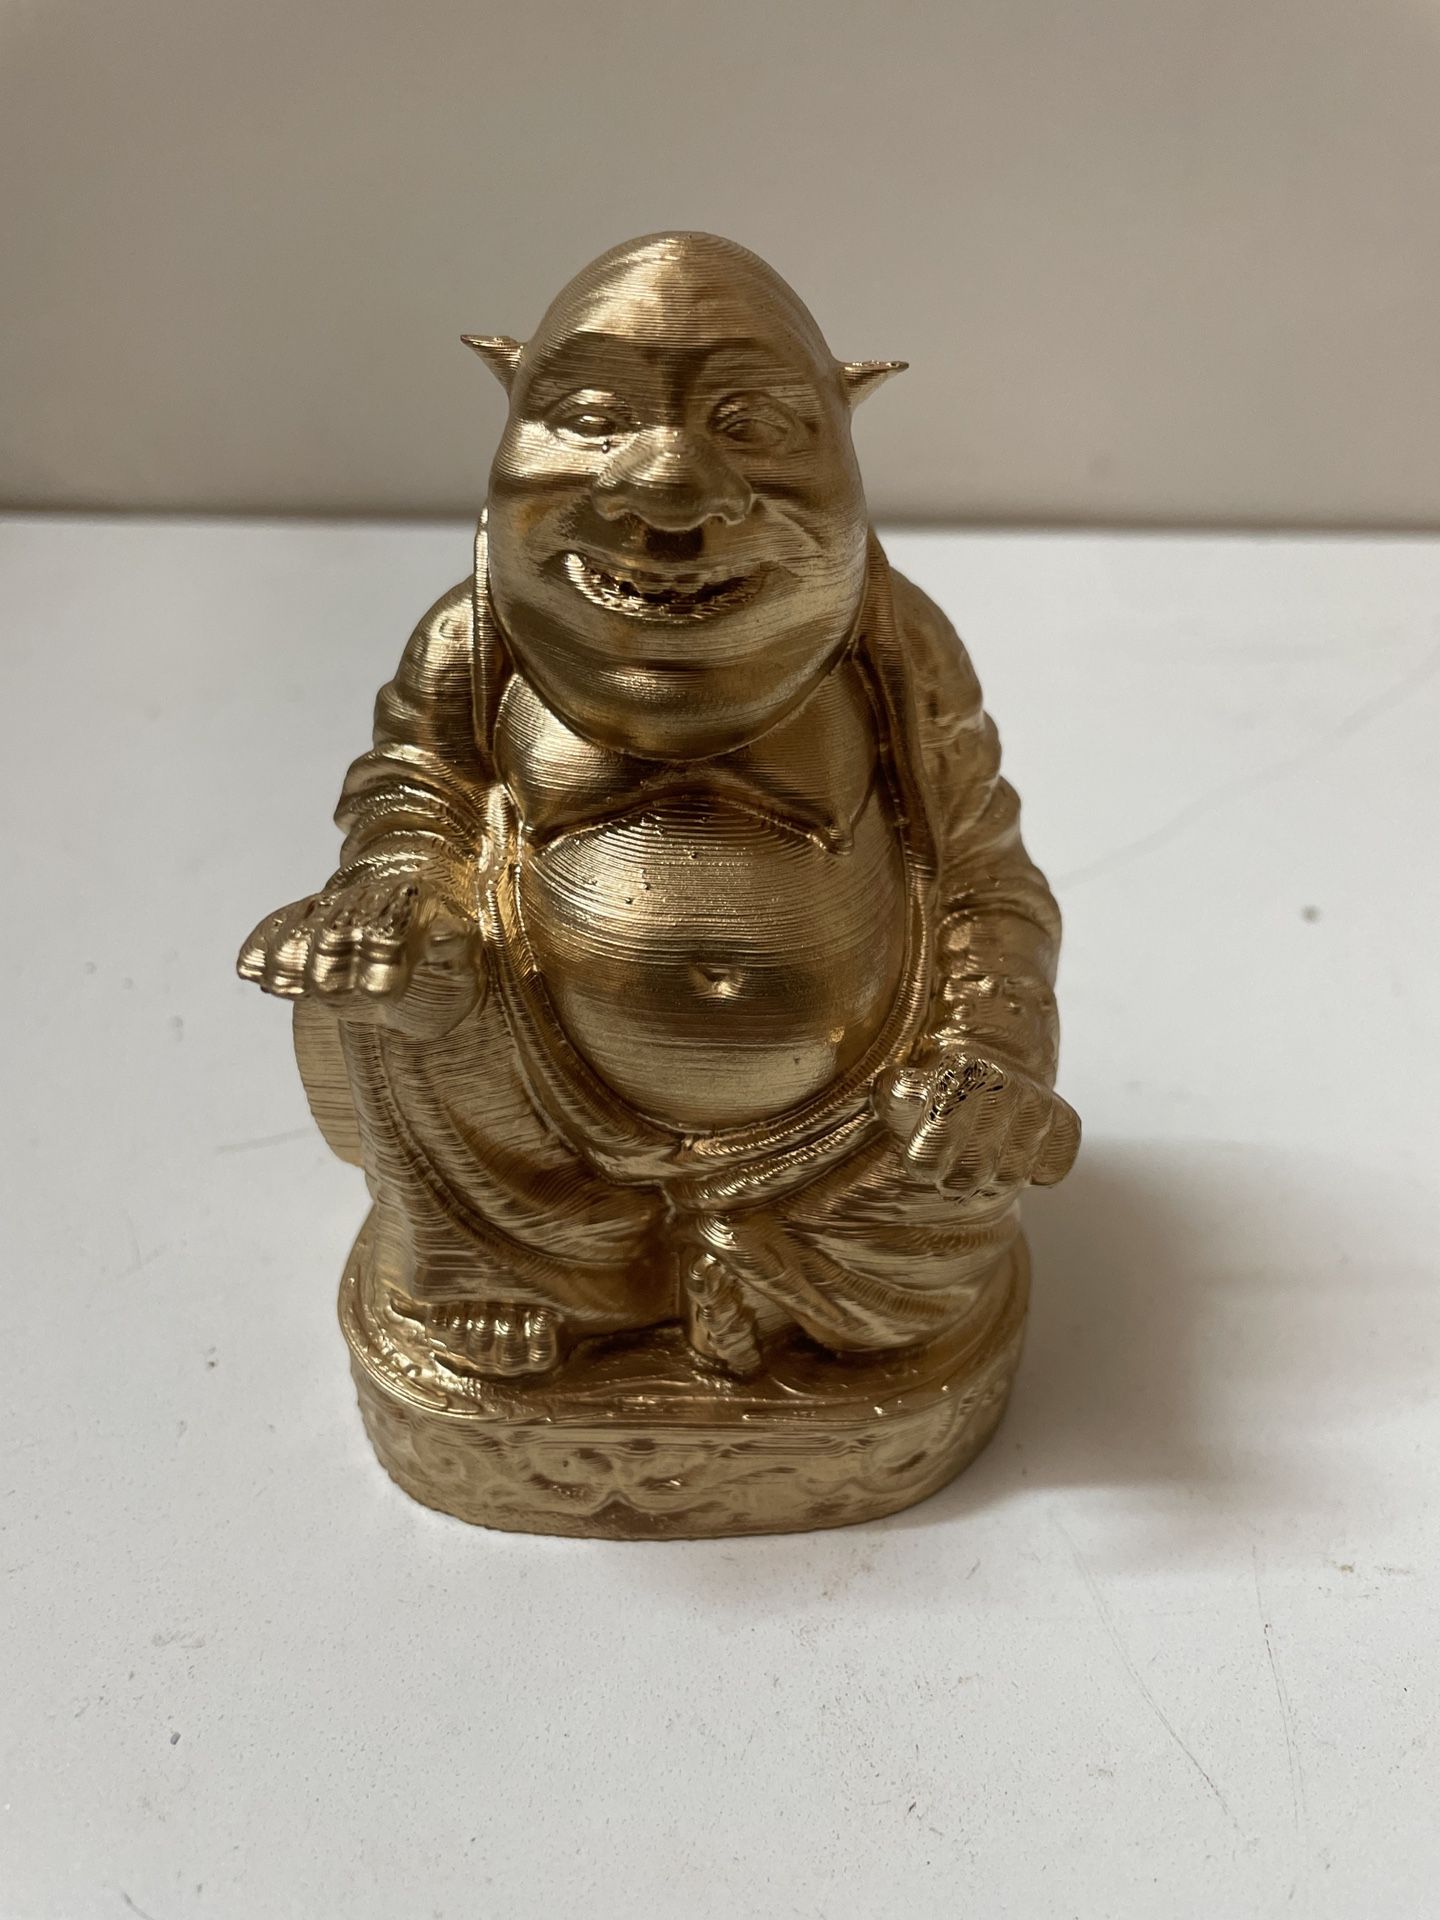 3D Printed Shrek Buddha 